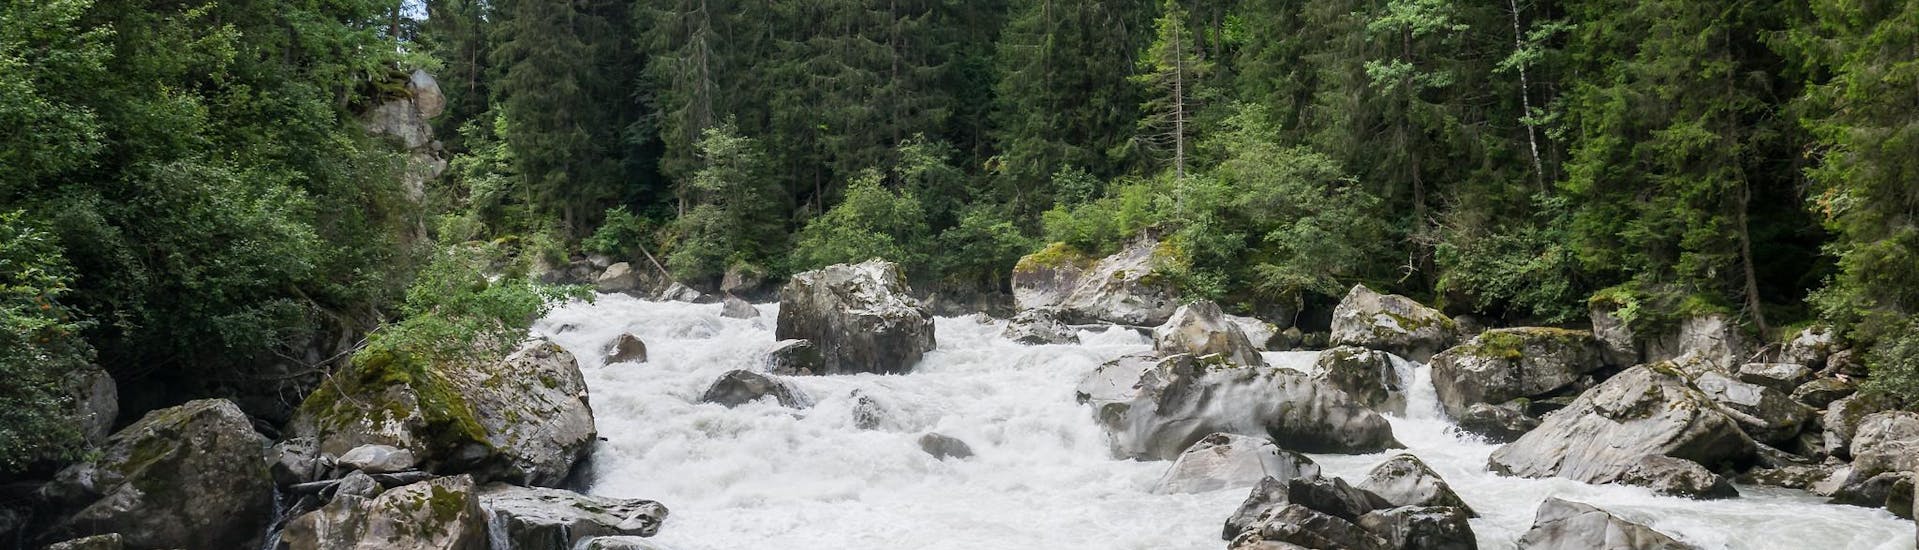 Fluss im Otztal während einer Rafting-Aktivität in Österreich.